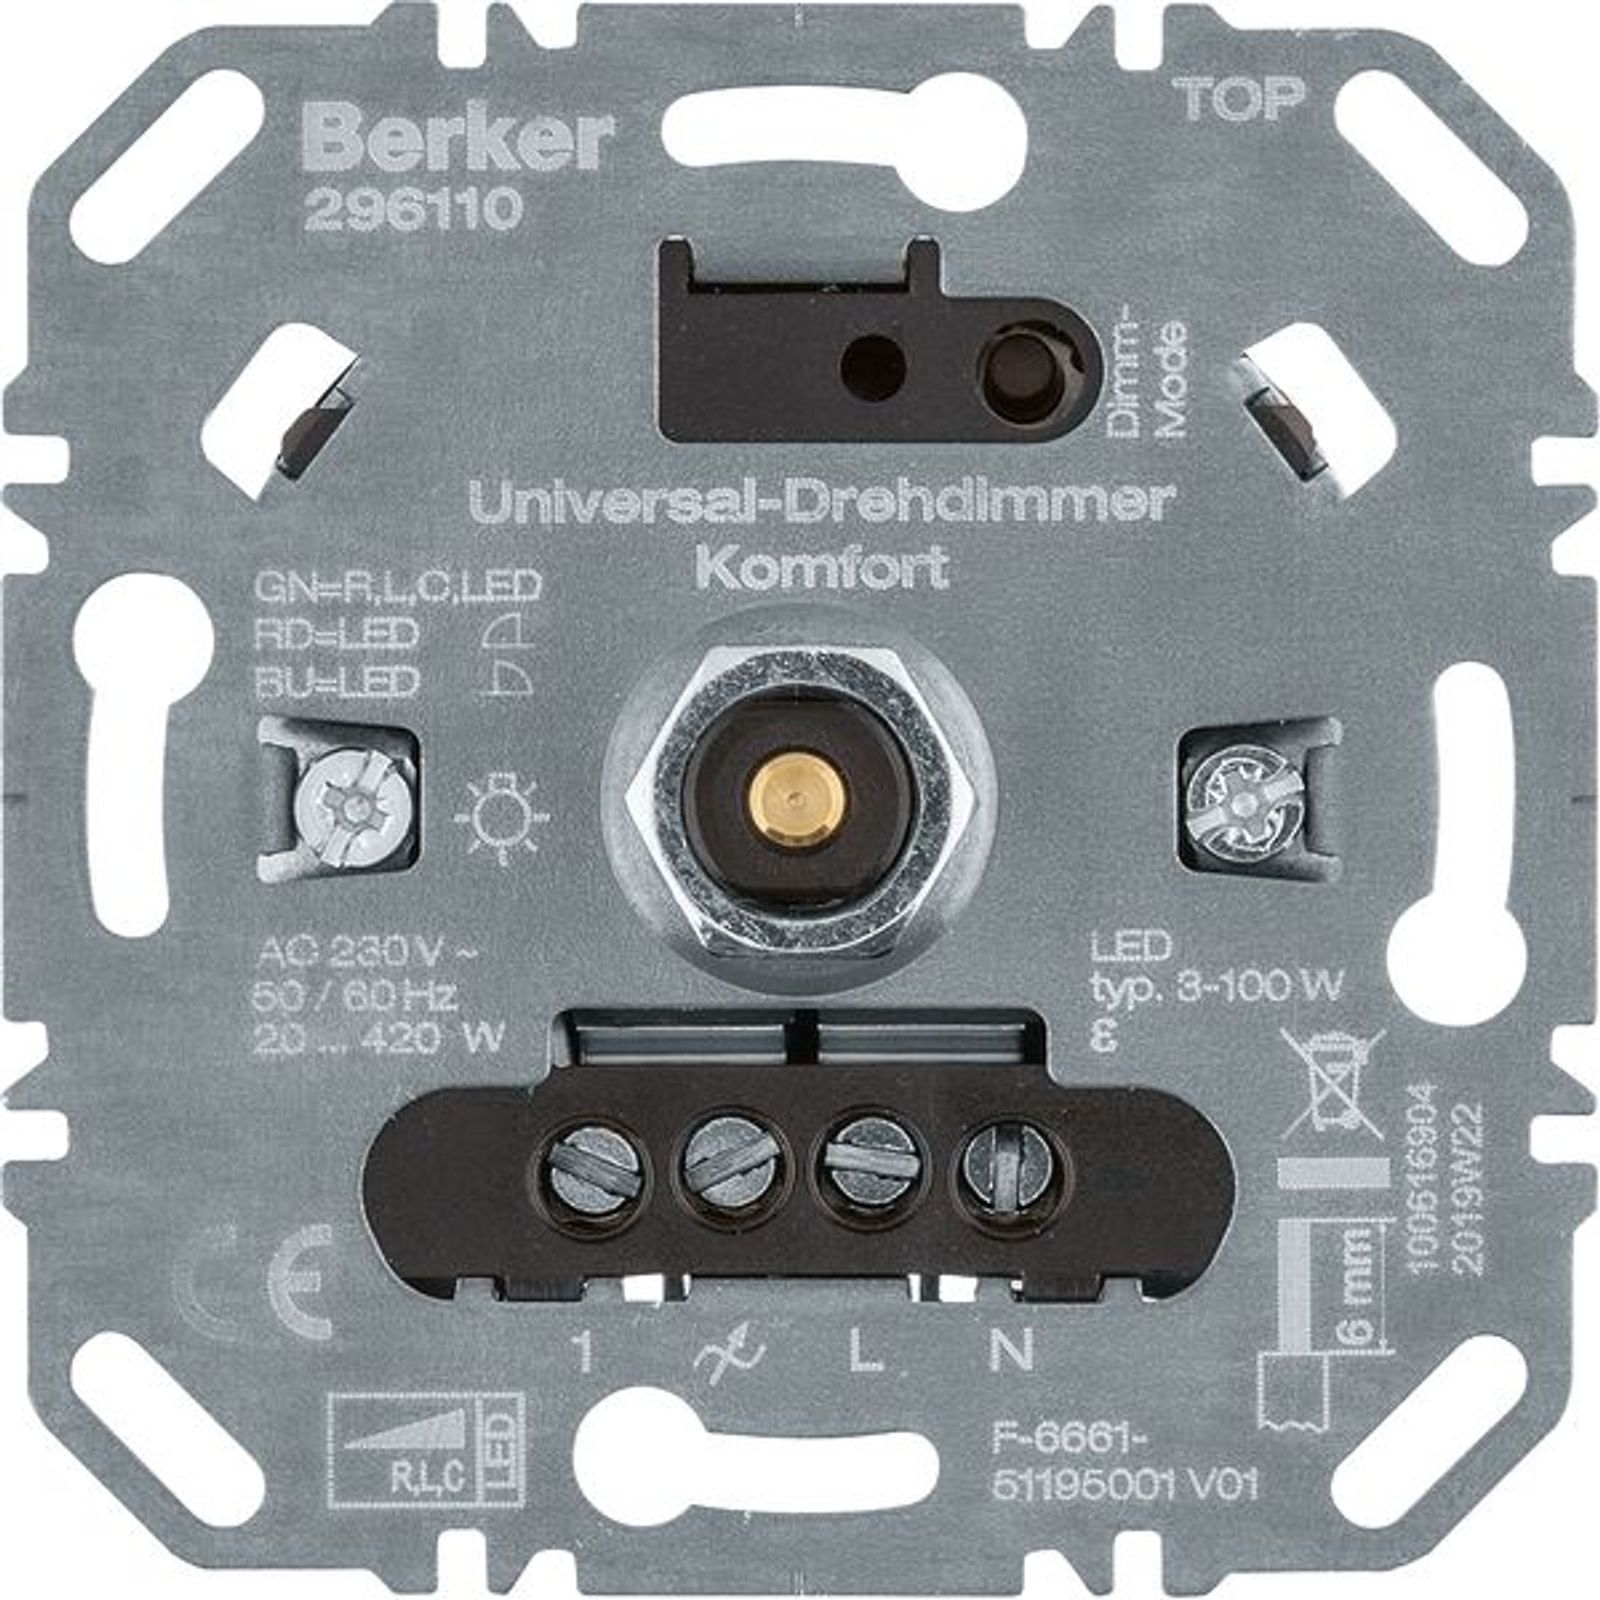 Berker 296110 Universal-Drehdimmer Komfort (R, L, C, LED), Softrastung, Lichtsteuerung